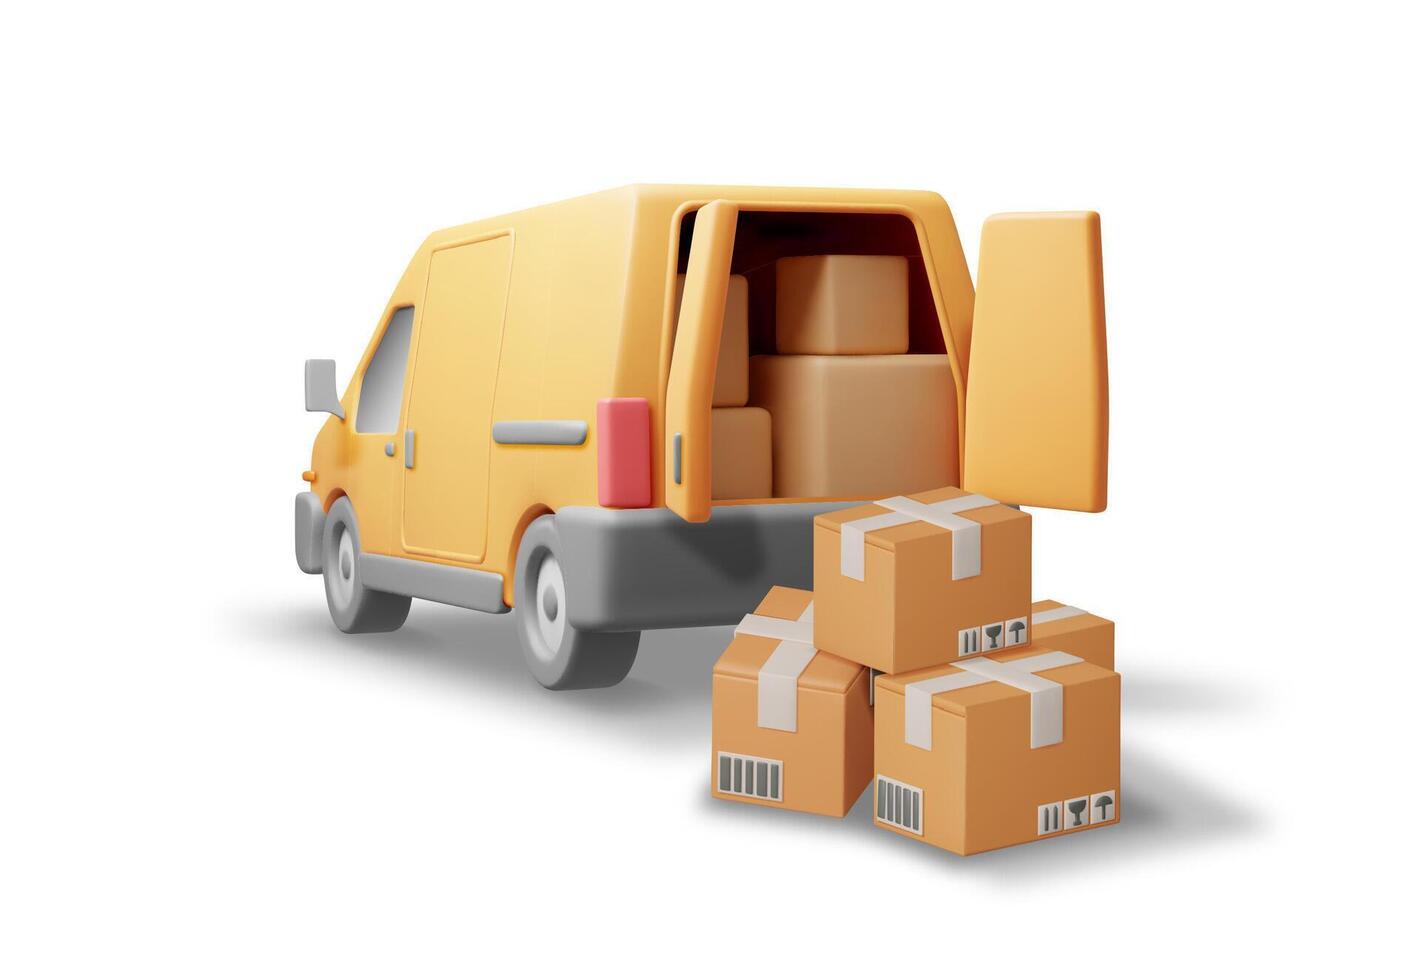 3d Lieferung van und Karton Kisten isoliert auf Weiß. machen ausdrücken liefern Dienstleistungen kommerziell LKW. Konzept von schnell und kostenlos Lieferung durch Wagen. Ladung und Logistik. realistisch Vektor Illustration